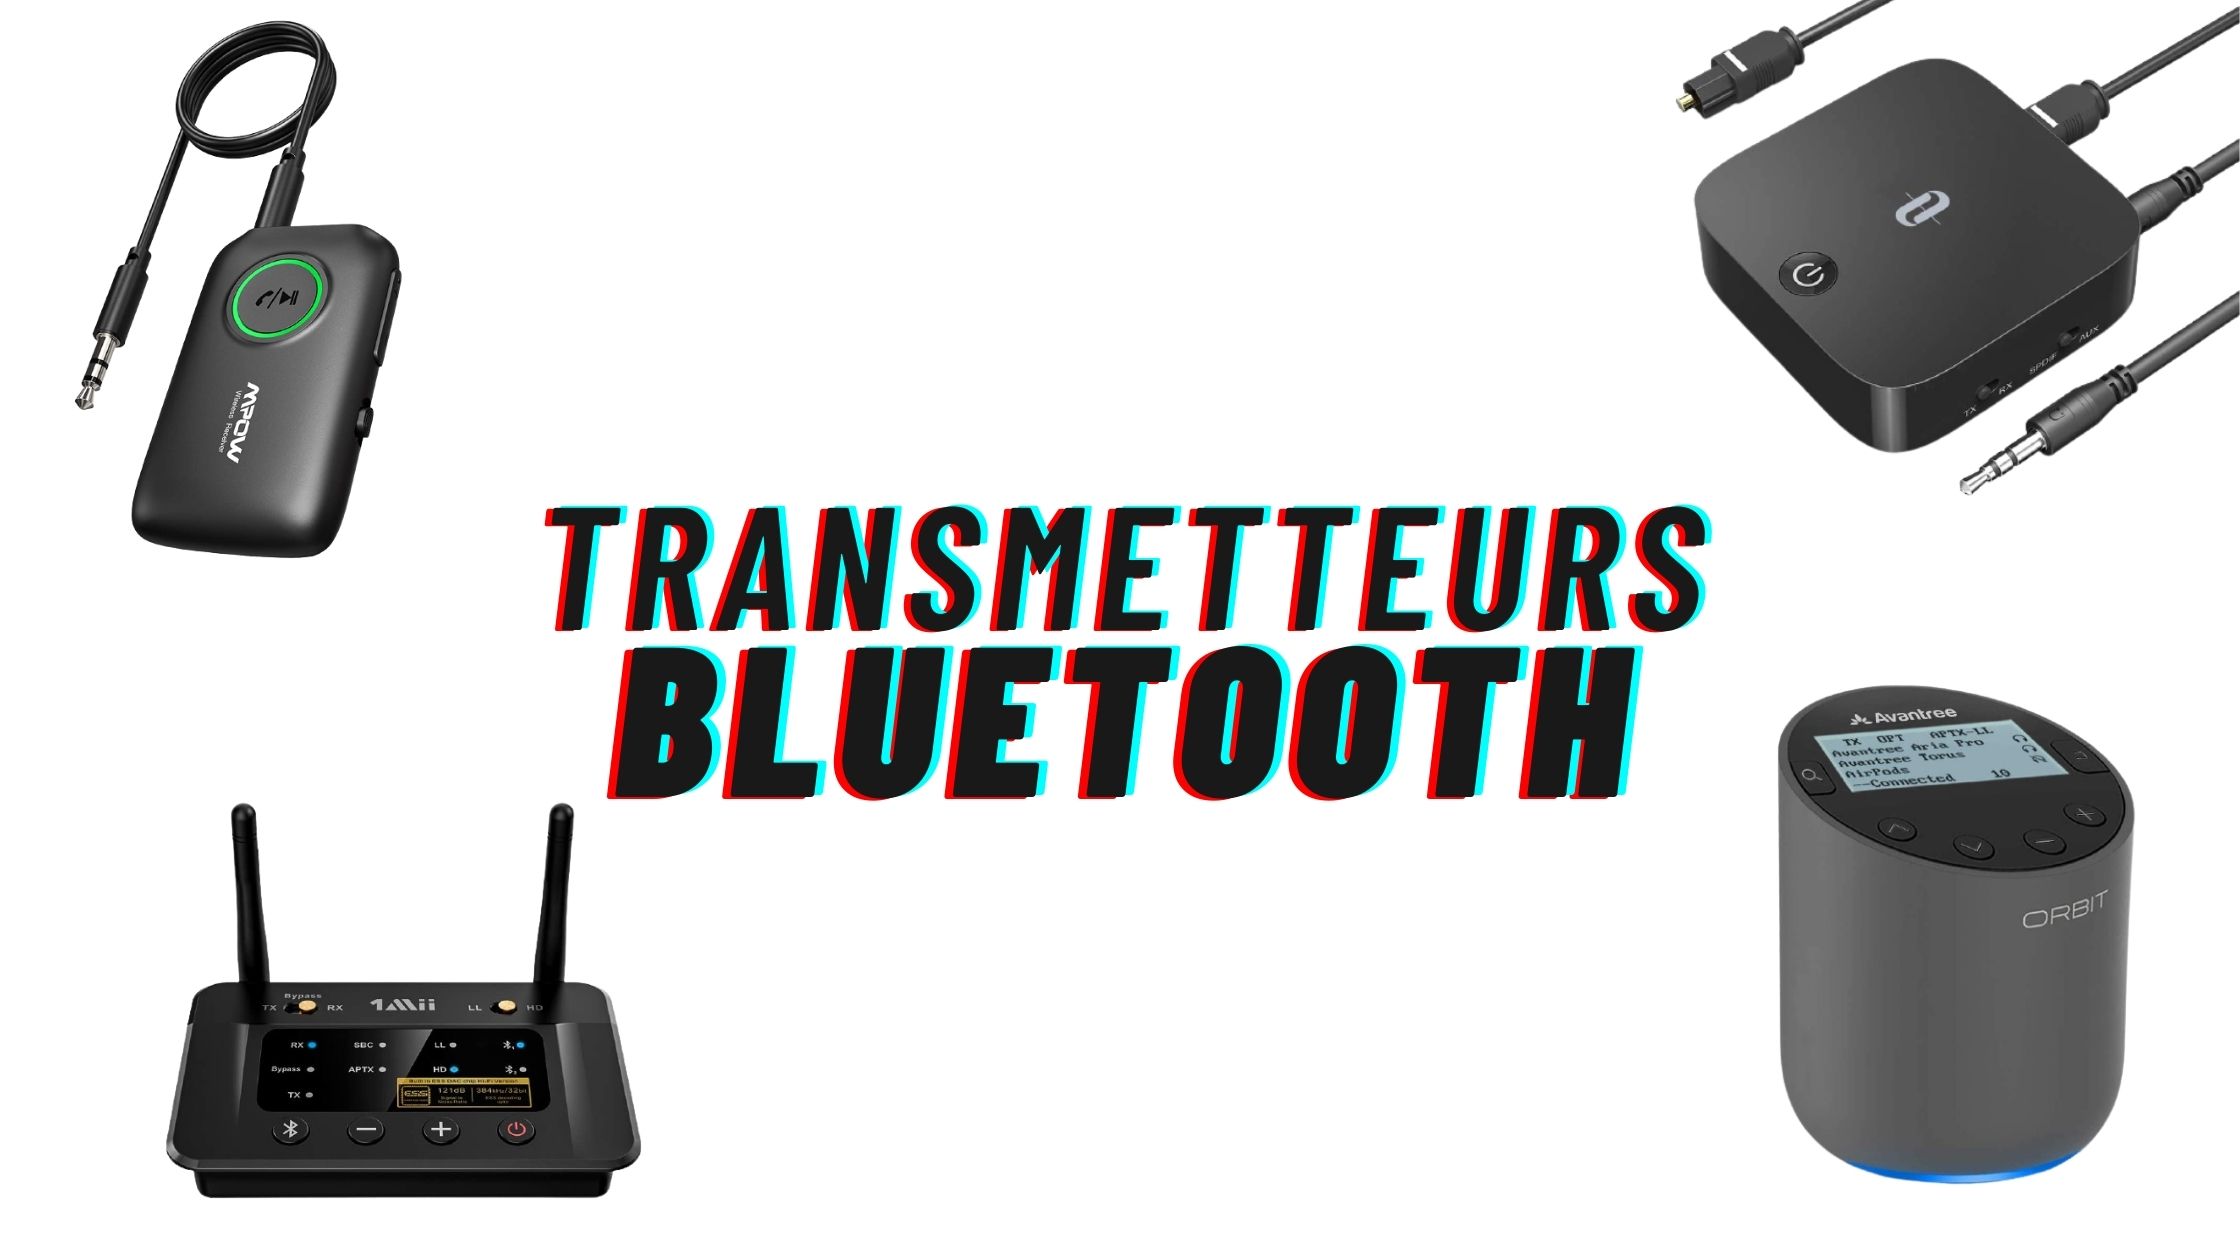 Comment profiter au maximum du transmetteur Bluetooth